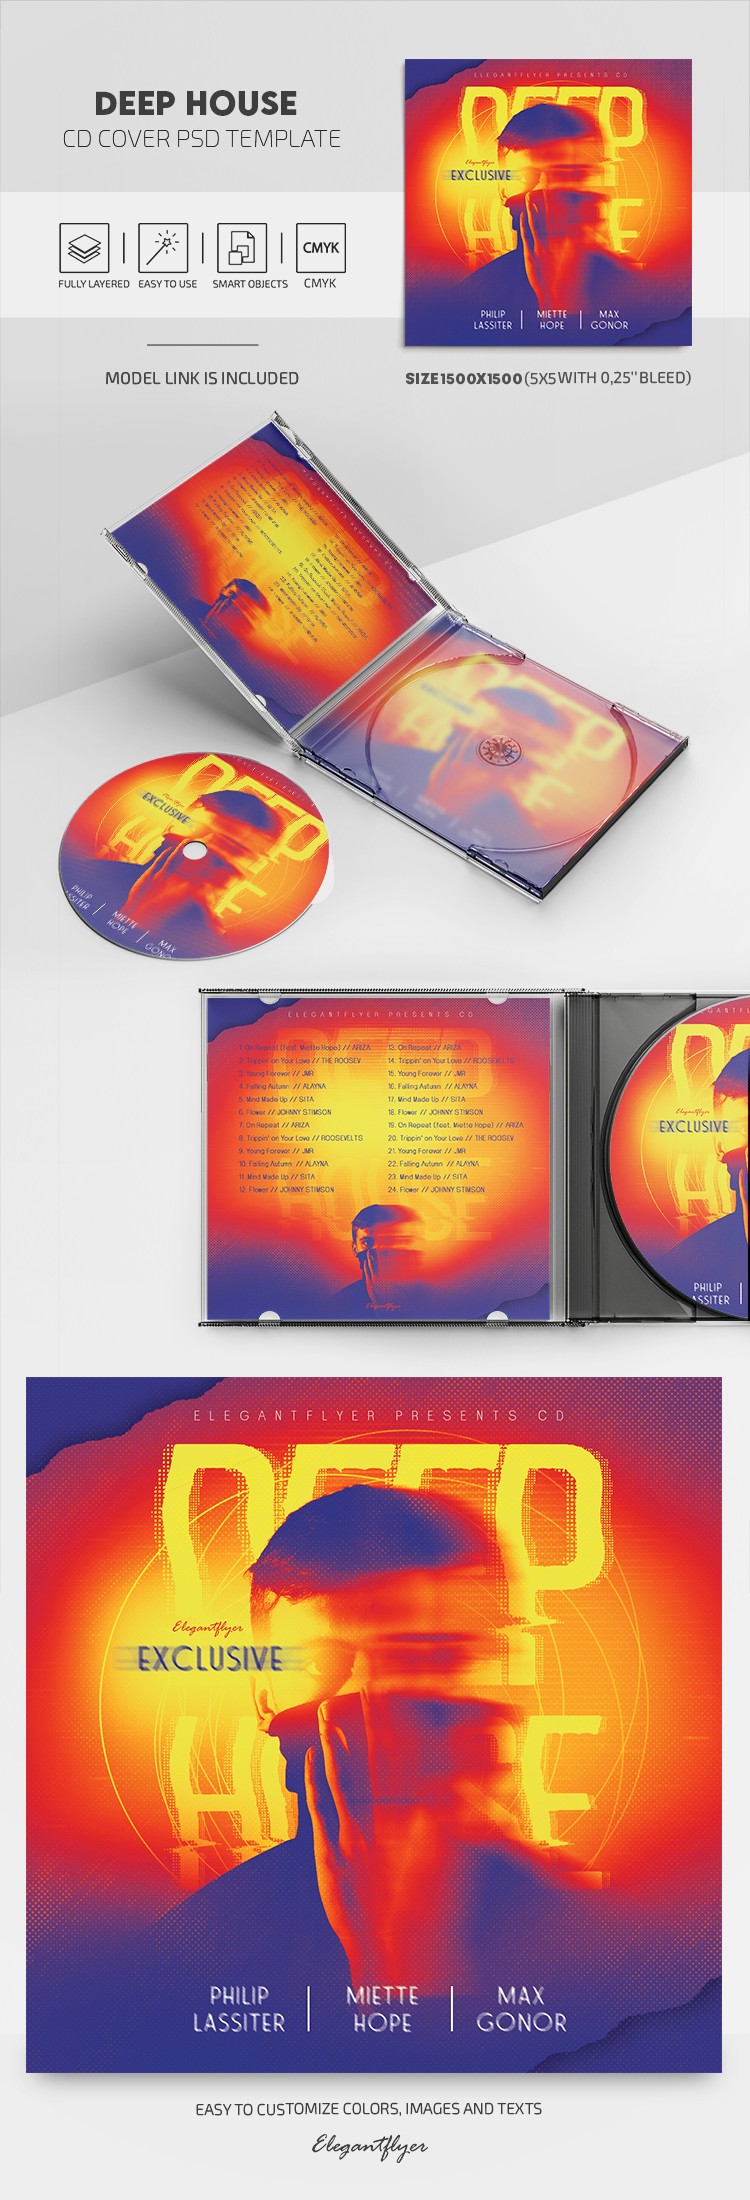 Deep House CD Cover by ElegantFlyer